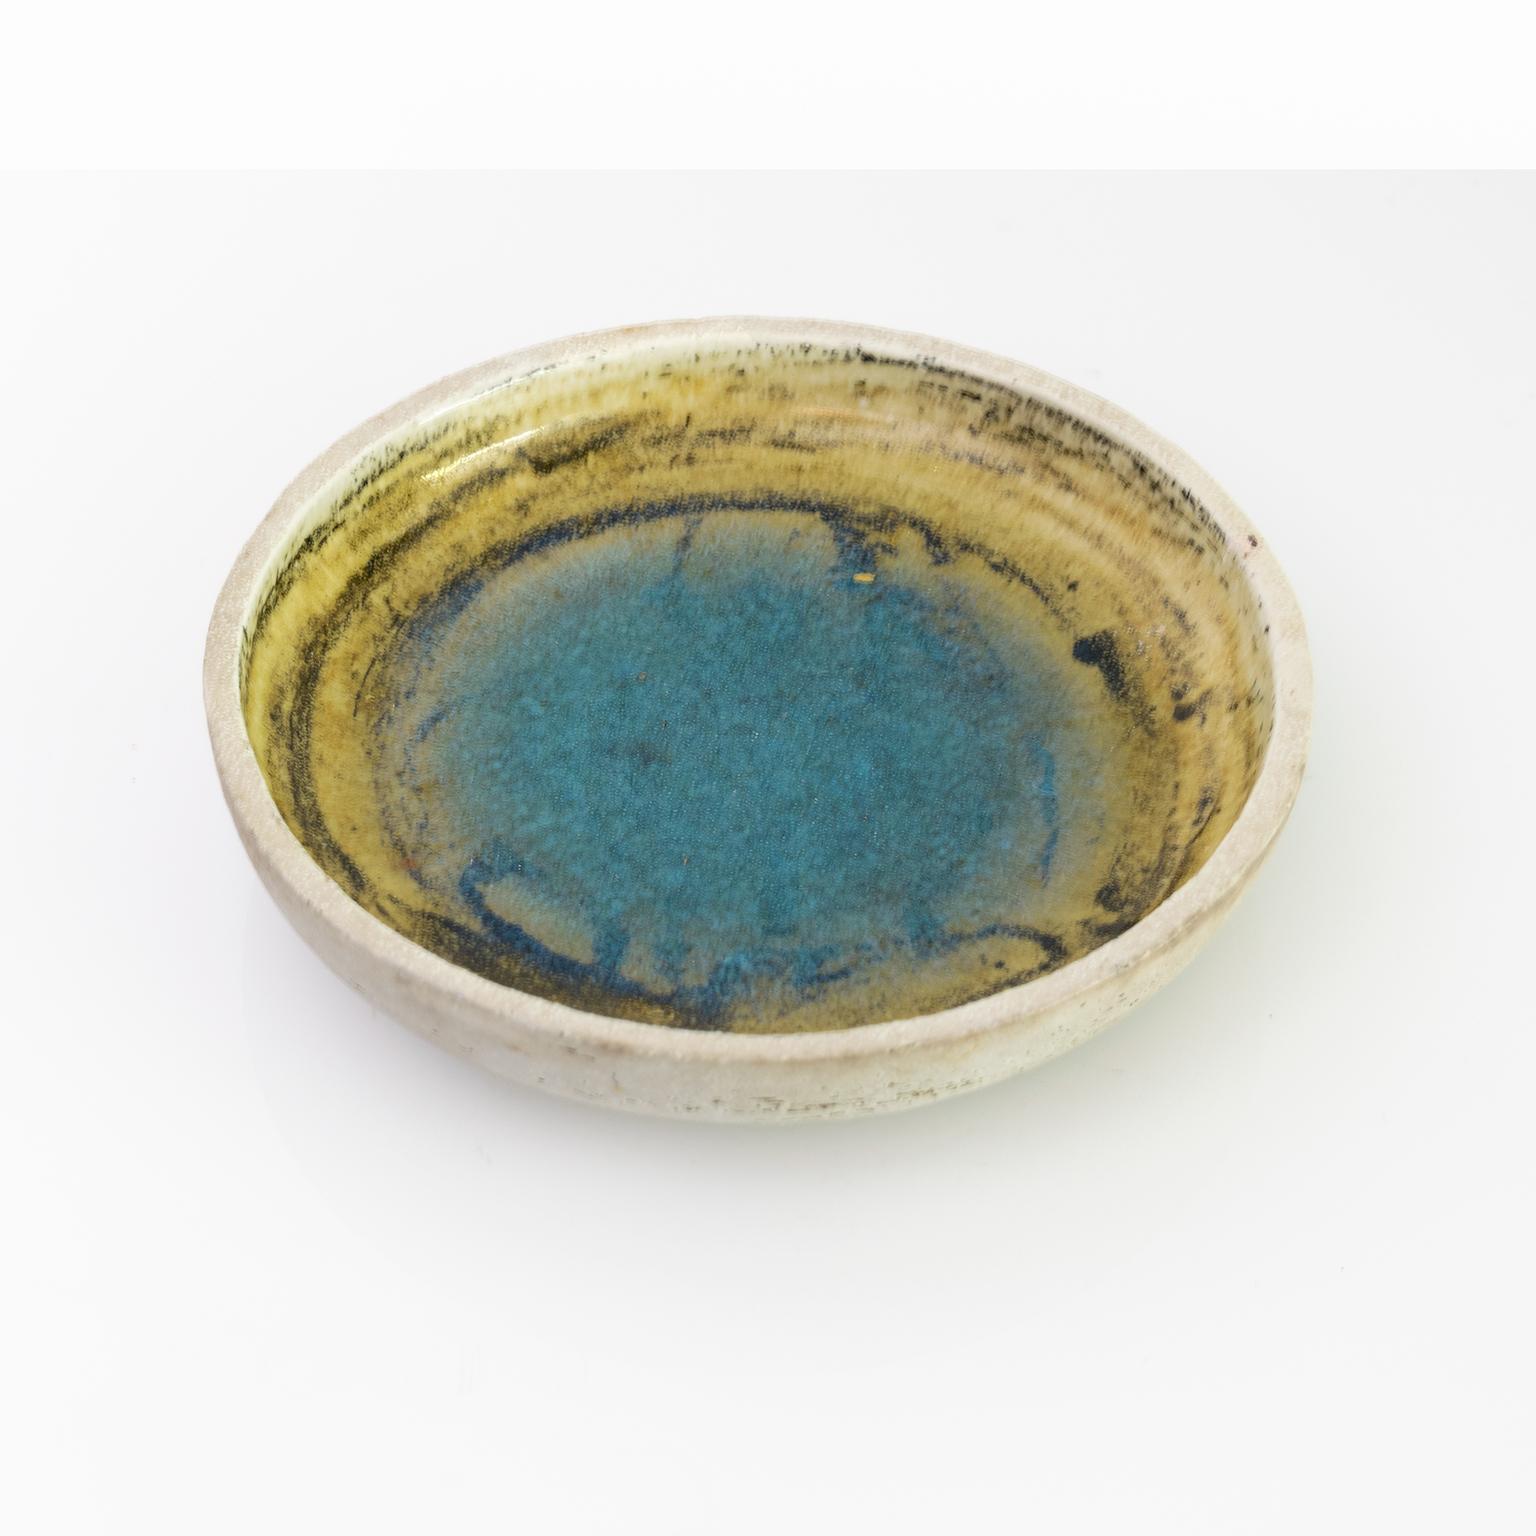 Un bol d'atelier unique de Sylvia Leuchovious avec un bassin de glaçure bleu aqua au centre. Le bol est jeté à la main et fait d'argile charmotte. Fabriqué à Gustavsberg, vers 1960.

Mesures : Diamètre : 10